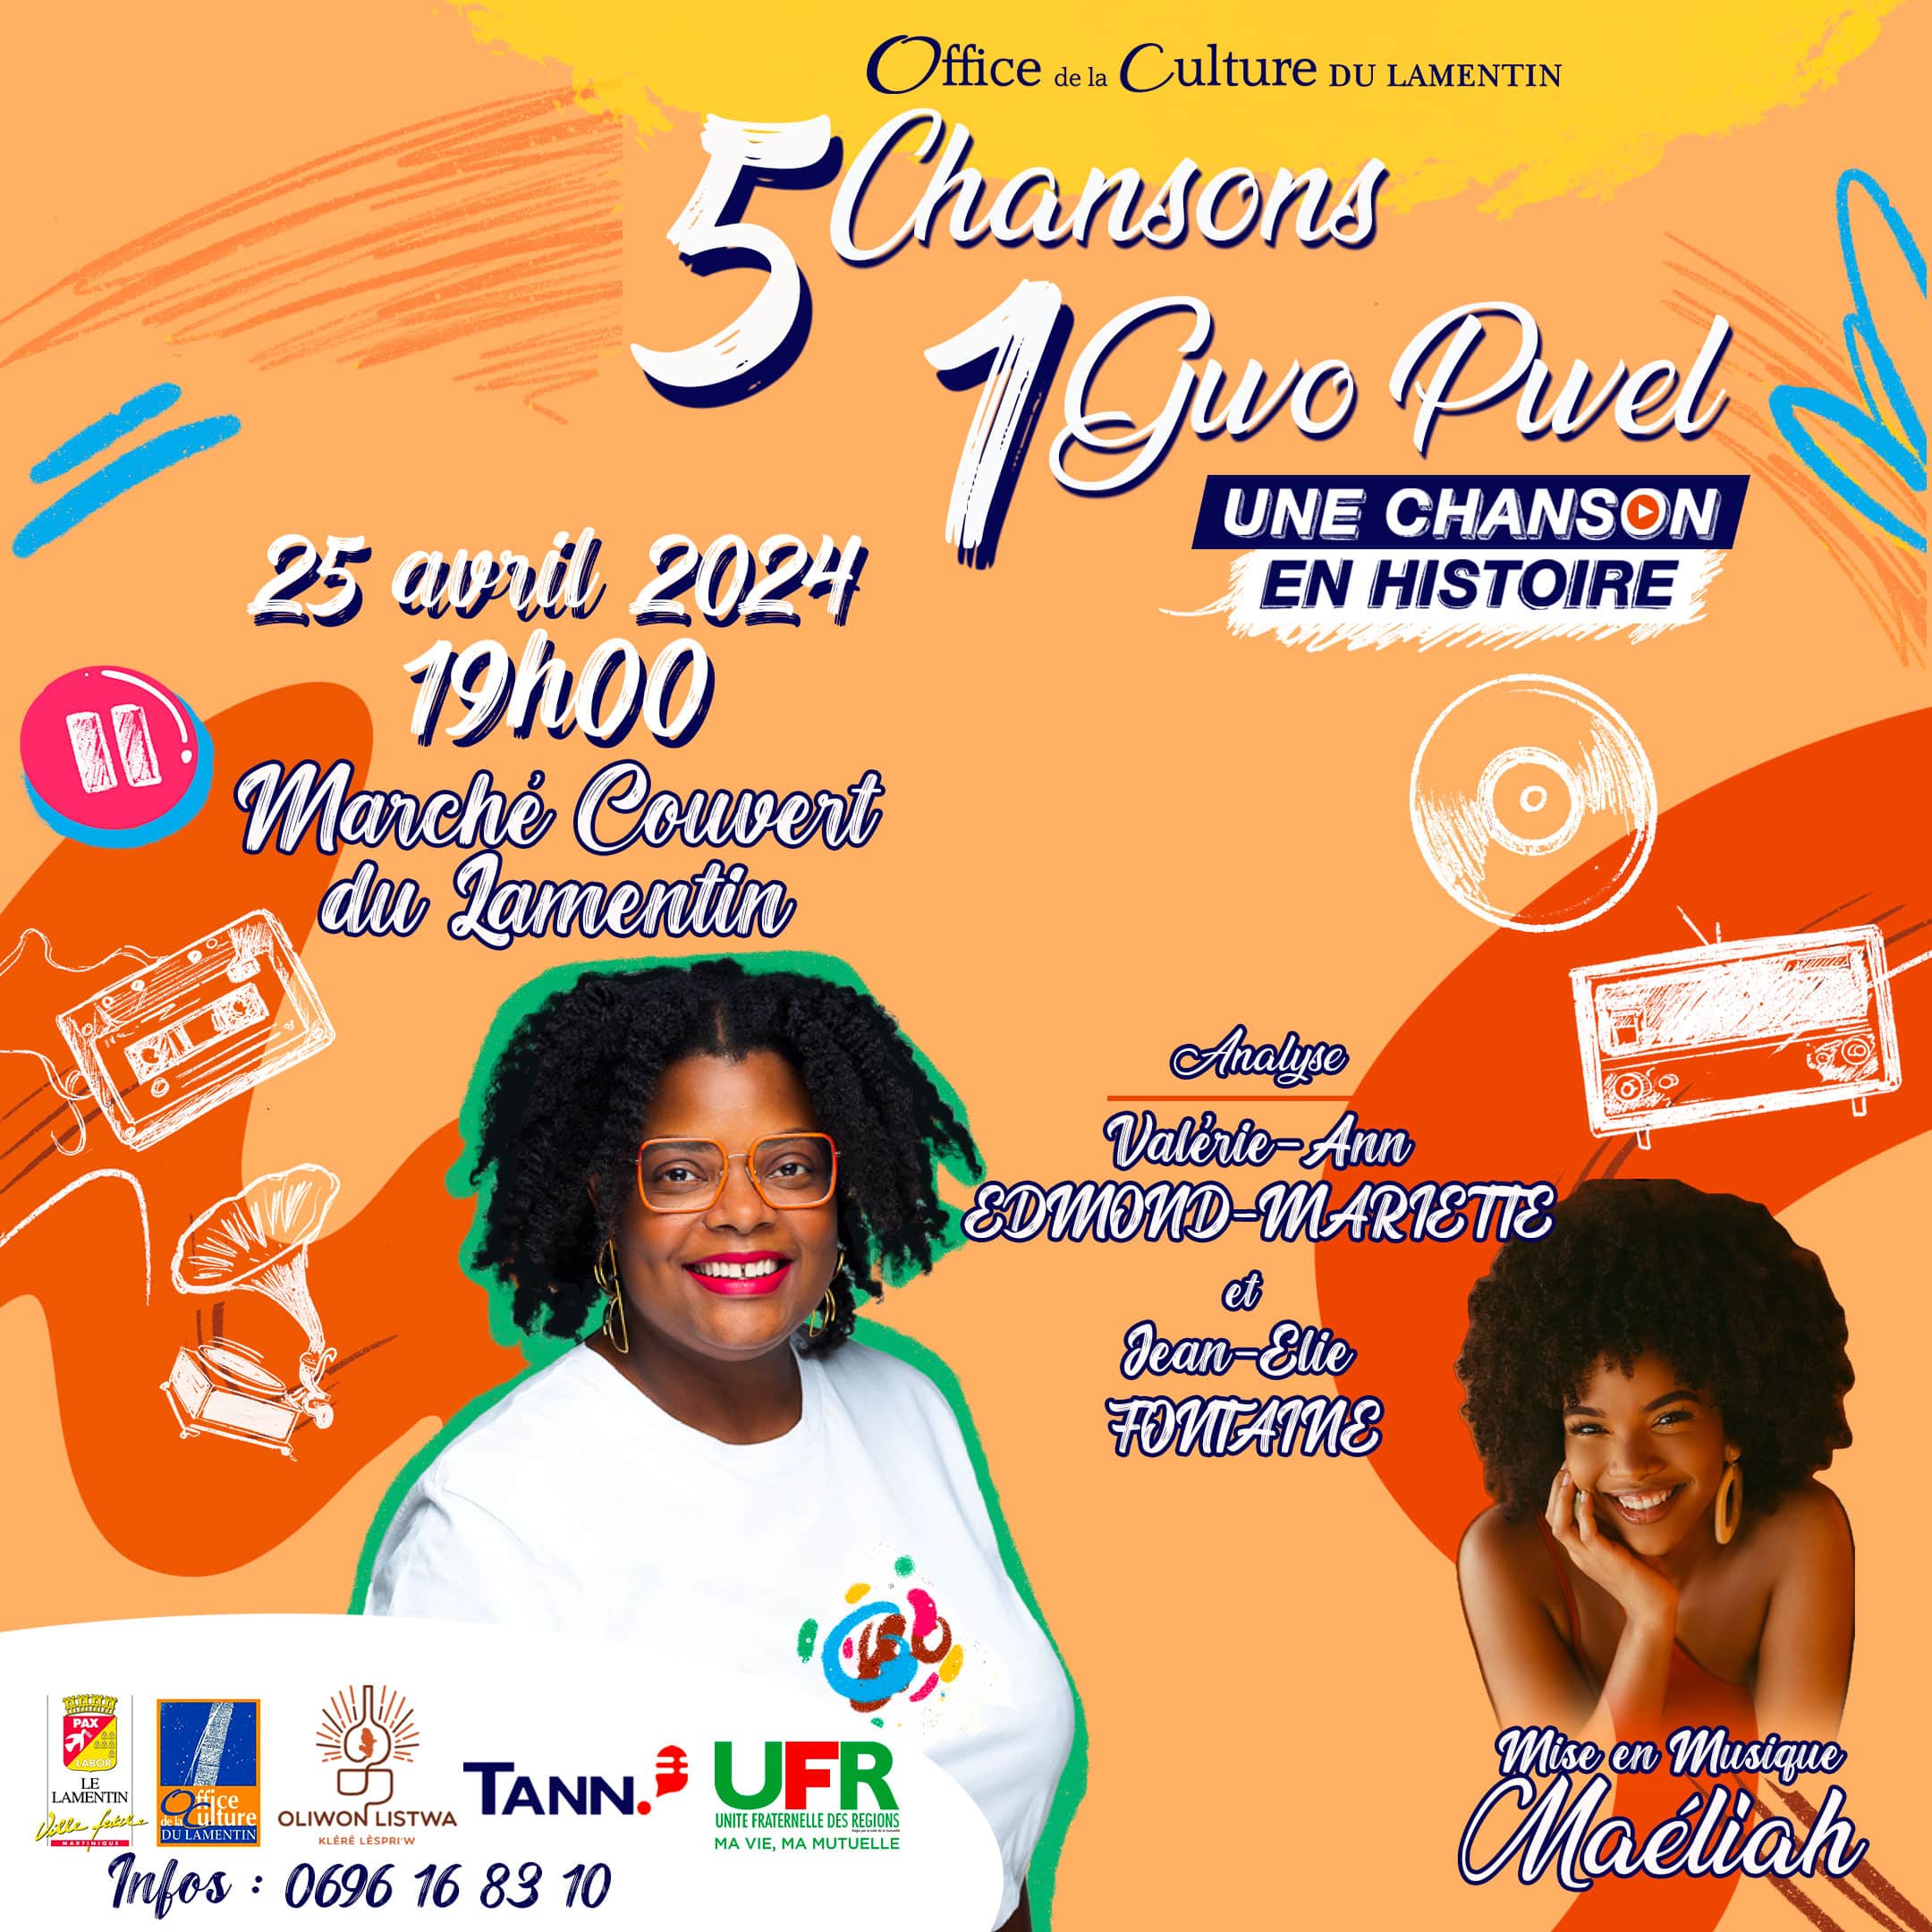 @tannaudio et l’Office de la Culture du Lamentin organisent le premier événement podcast live de Martinique avec @unechansonenhistoire Le concept: « 5 chansons 1 gwo pwel », découvrez les étapes […]